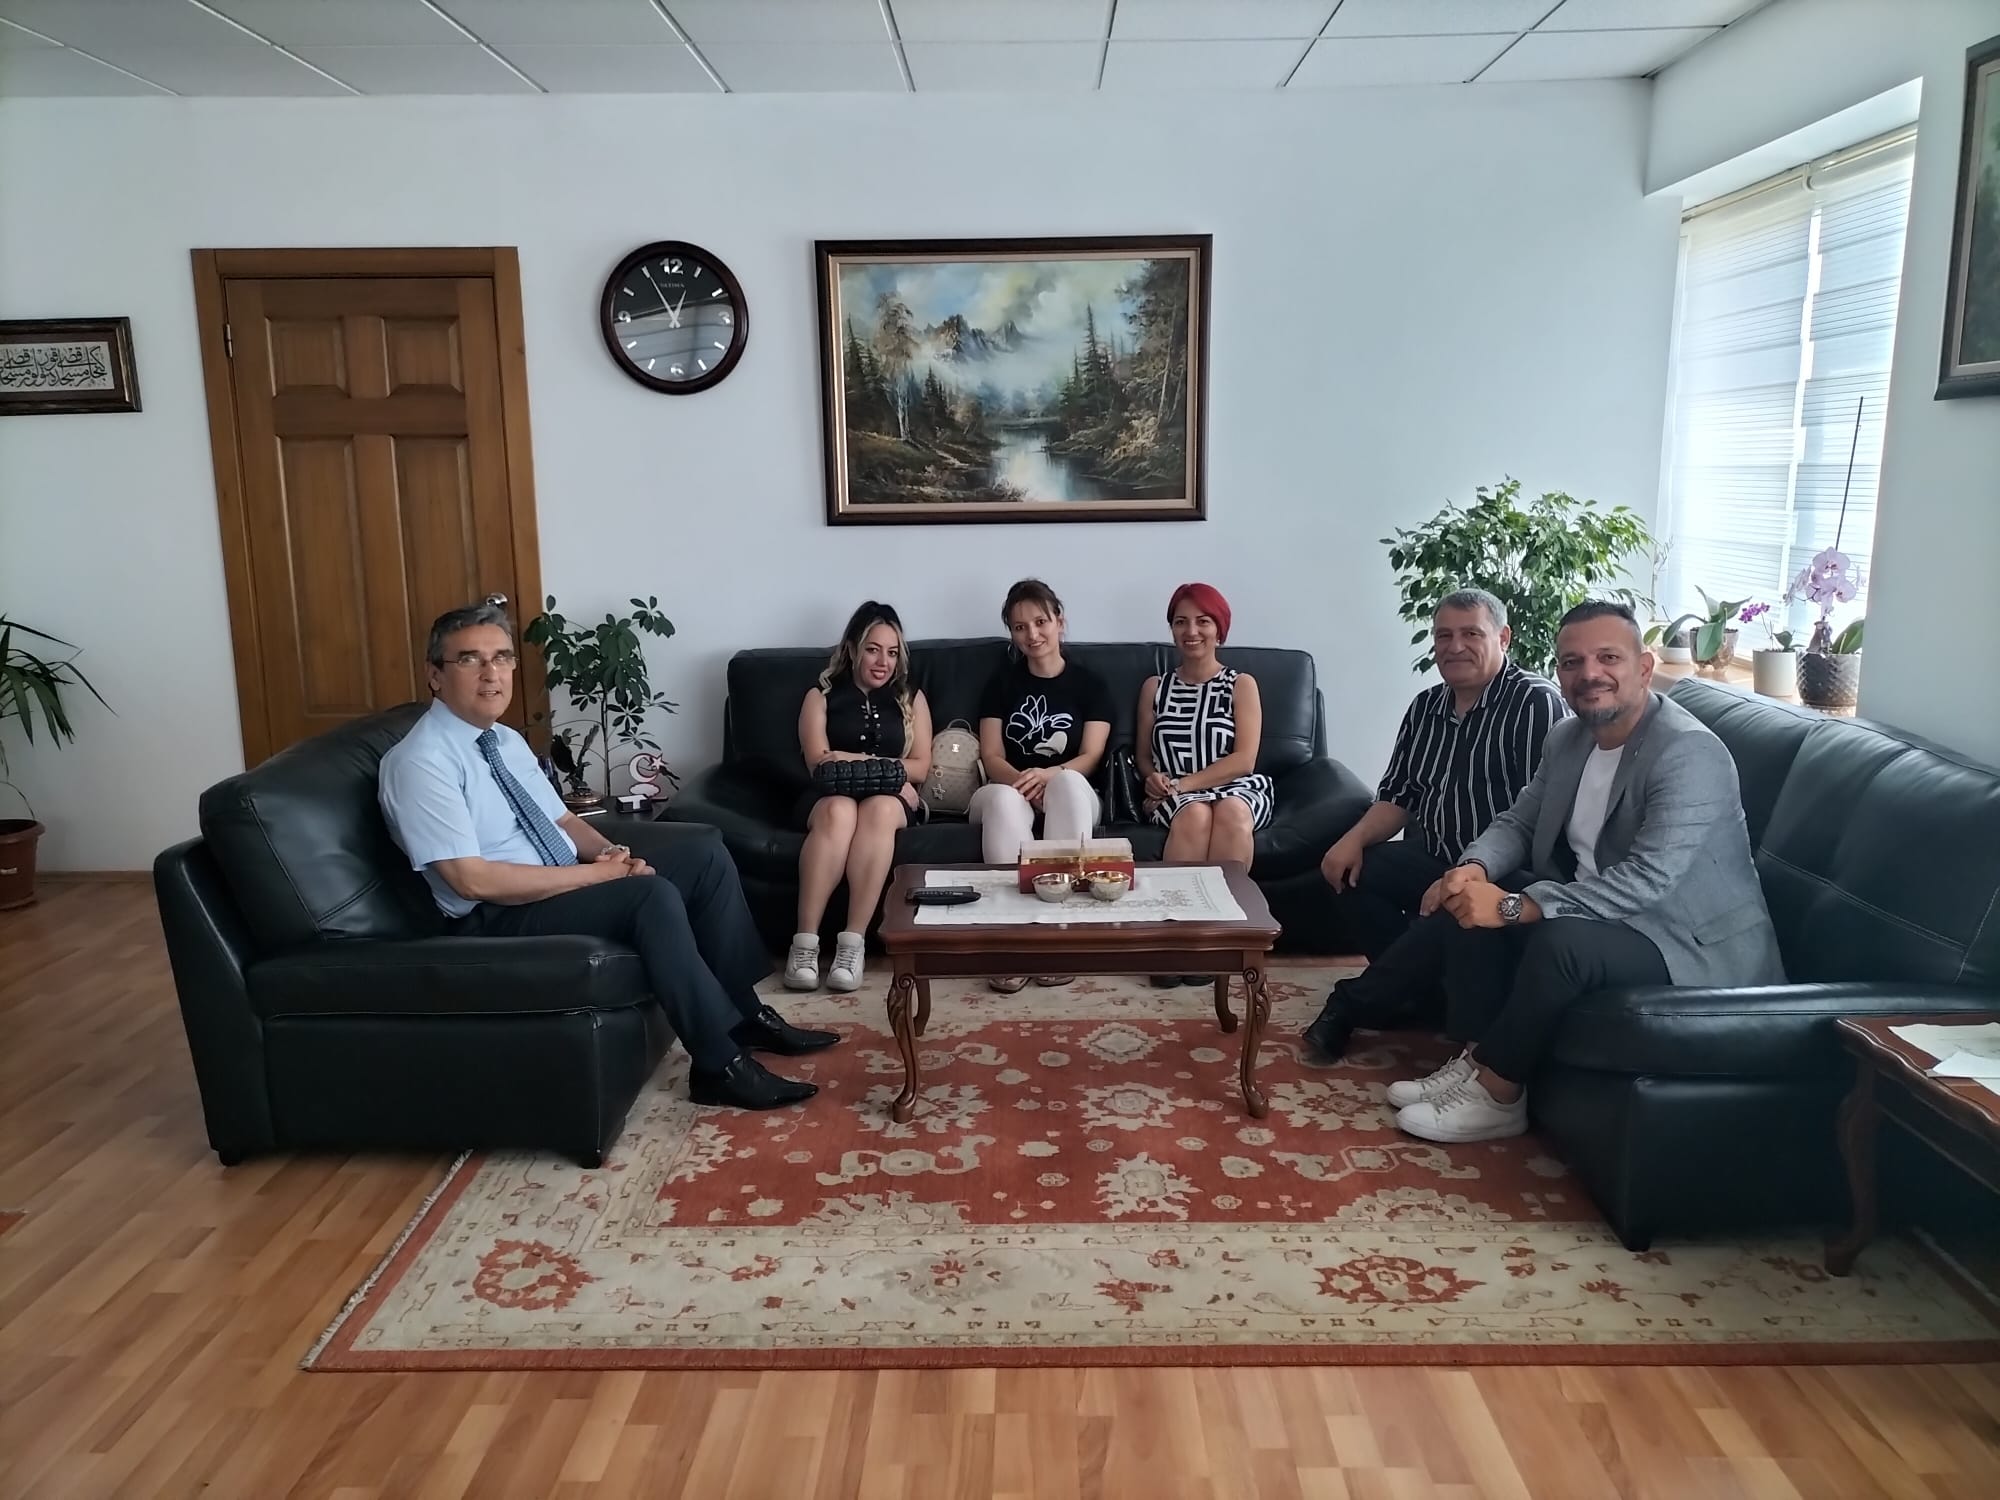 Hürriyetçi Eğitimsen Sendikası Yöneticileri Eskişehir'e Ziyaret Gerçekleştirdi